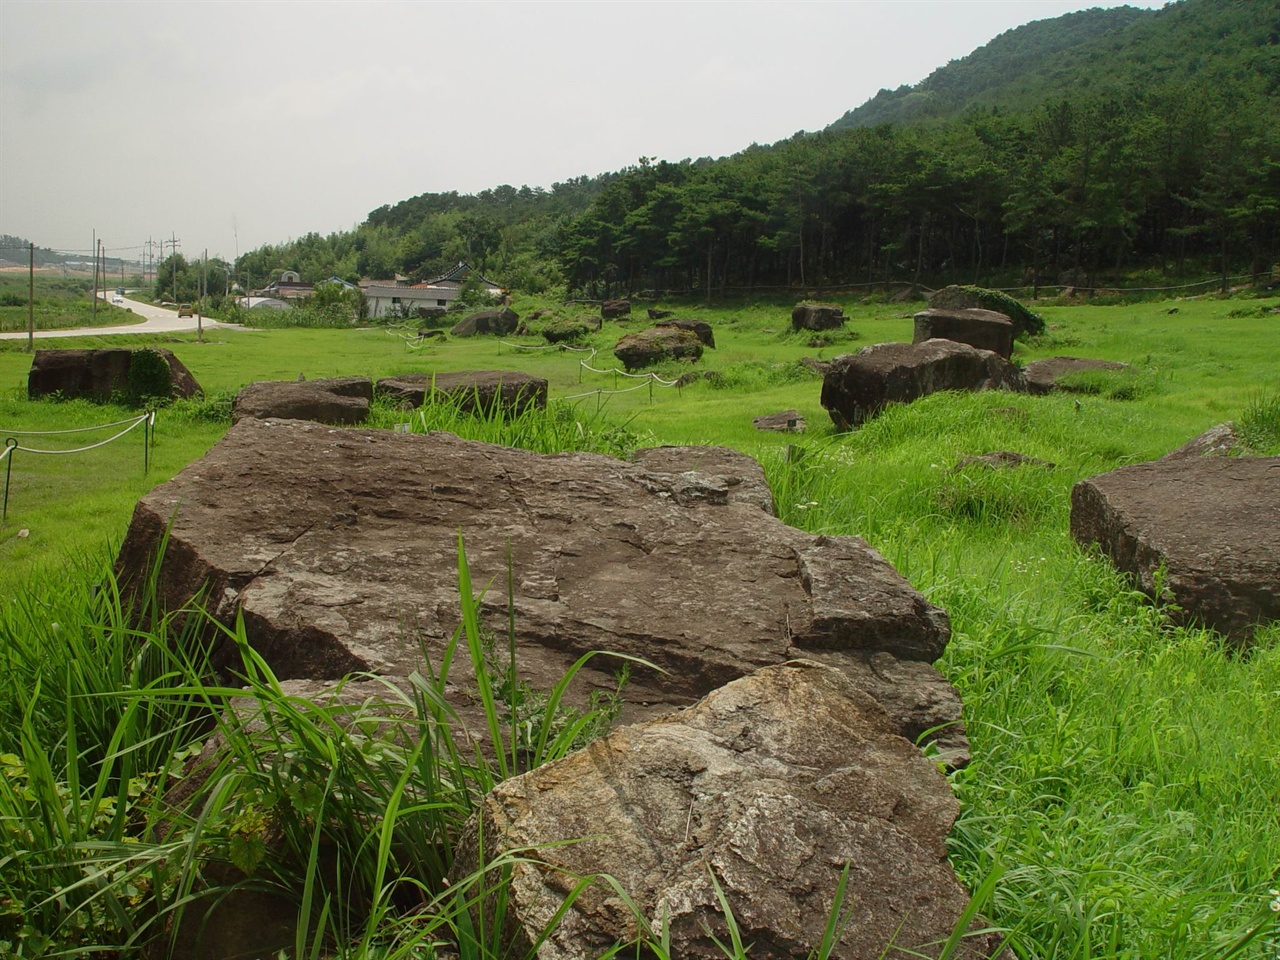 이곳에는 고인돌 무덤이 500기 남짓 모여 있다. 강화군 하점면 부근리 고인돌이나 북한에 있는 아주 큰 탁자식 고인돌이 당시 그 지역의 ‘부족장 무덤’이라면 전라남?북도에서 볼 수 있는 고인돌 무덤 떼는 ‘마을 공동묘지’가 아니었을까 싶다.